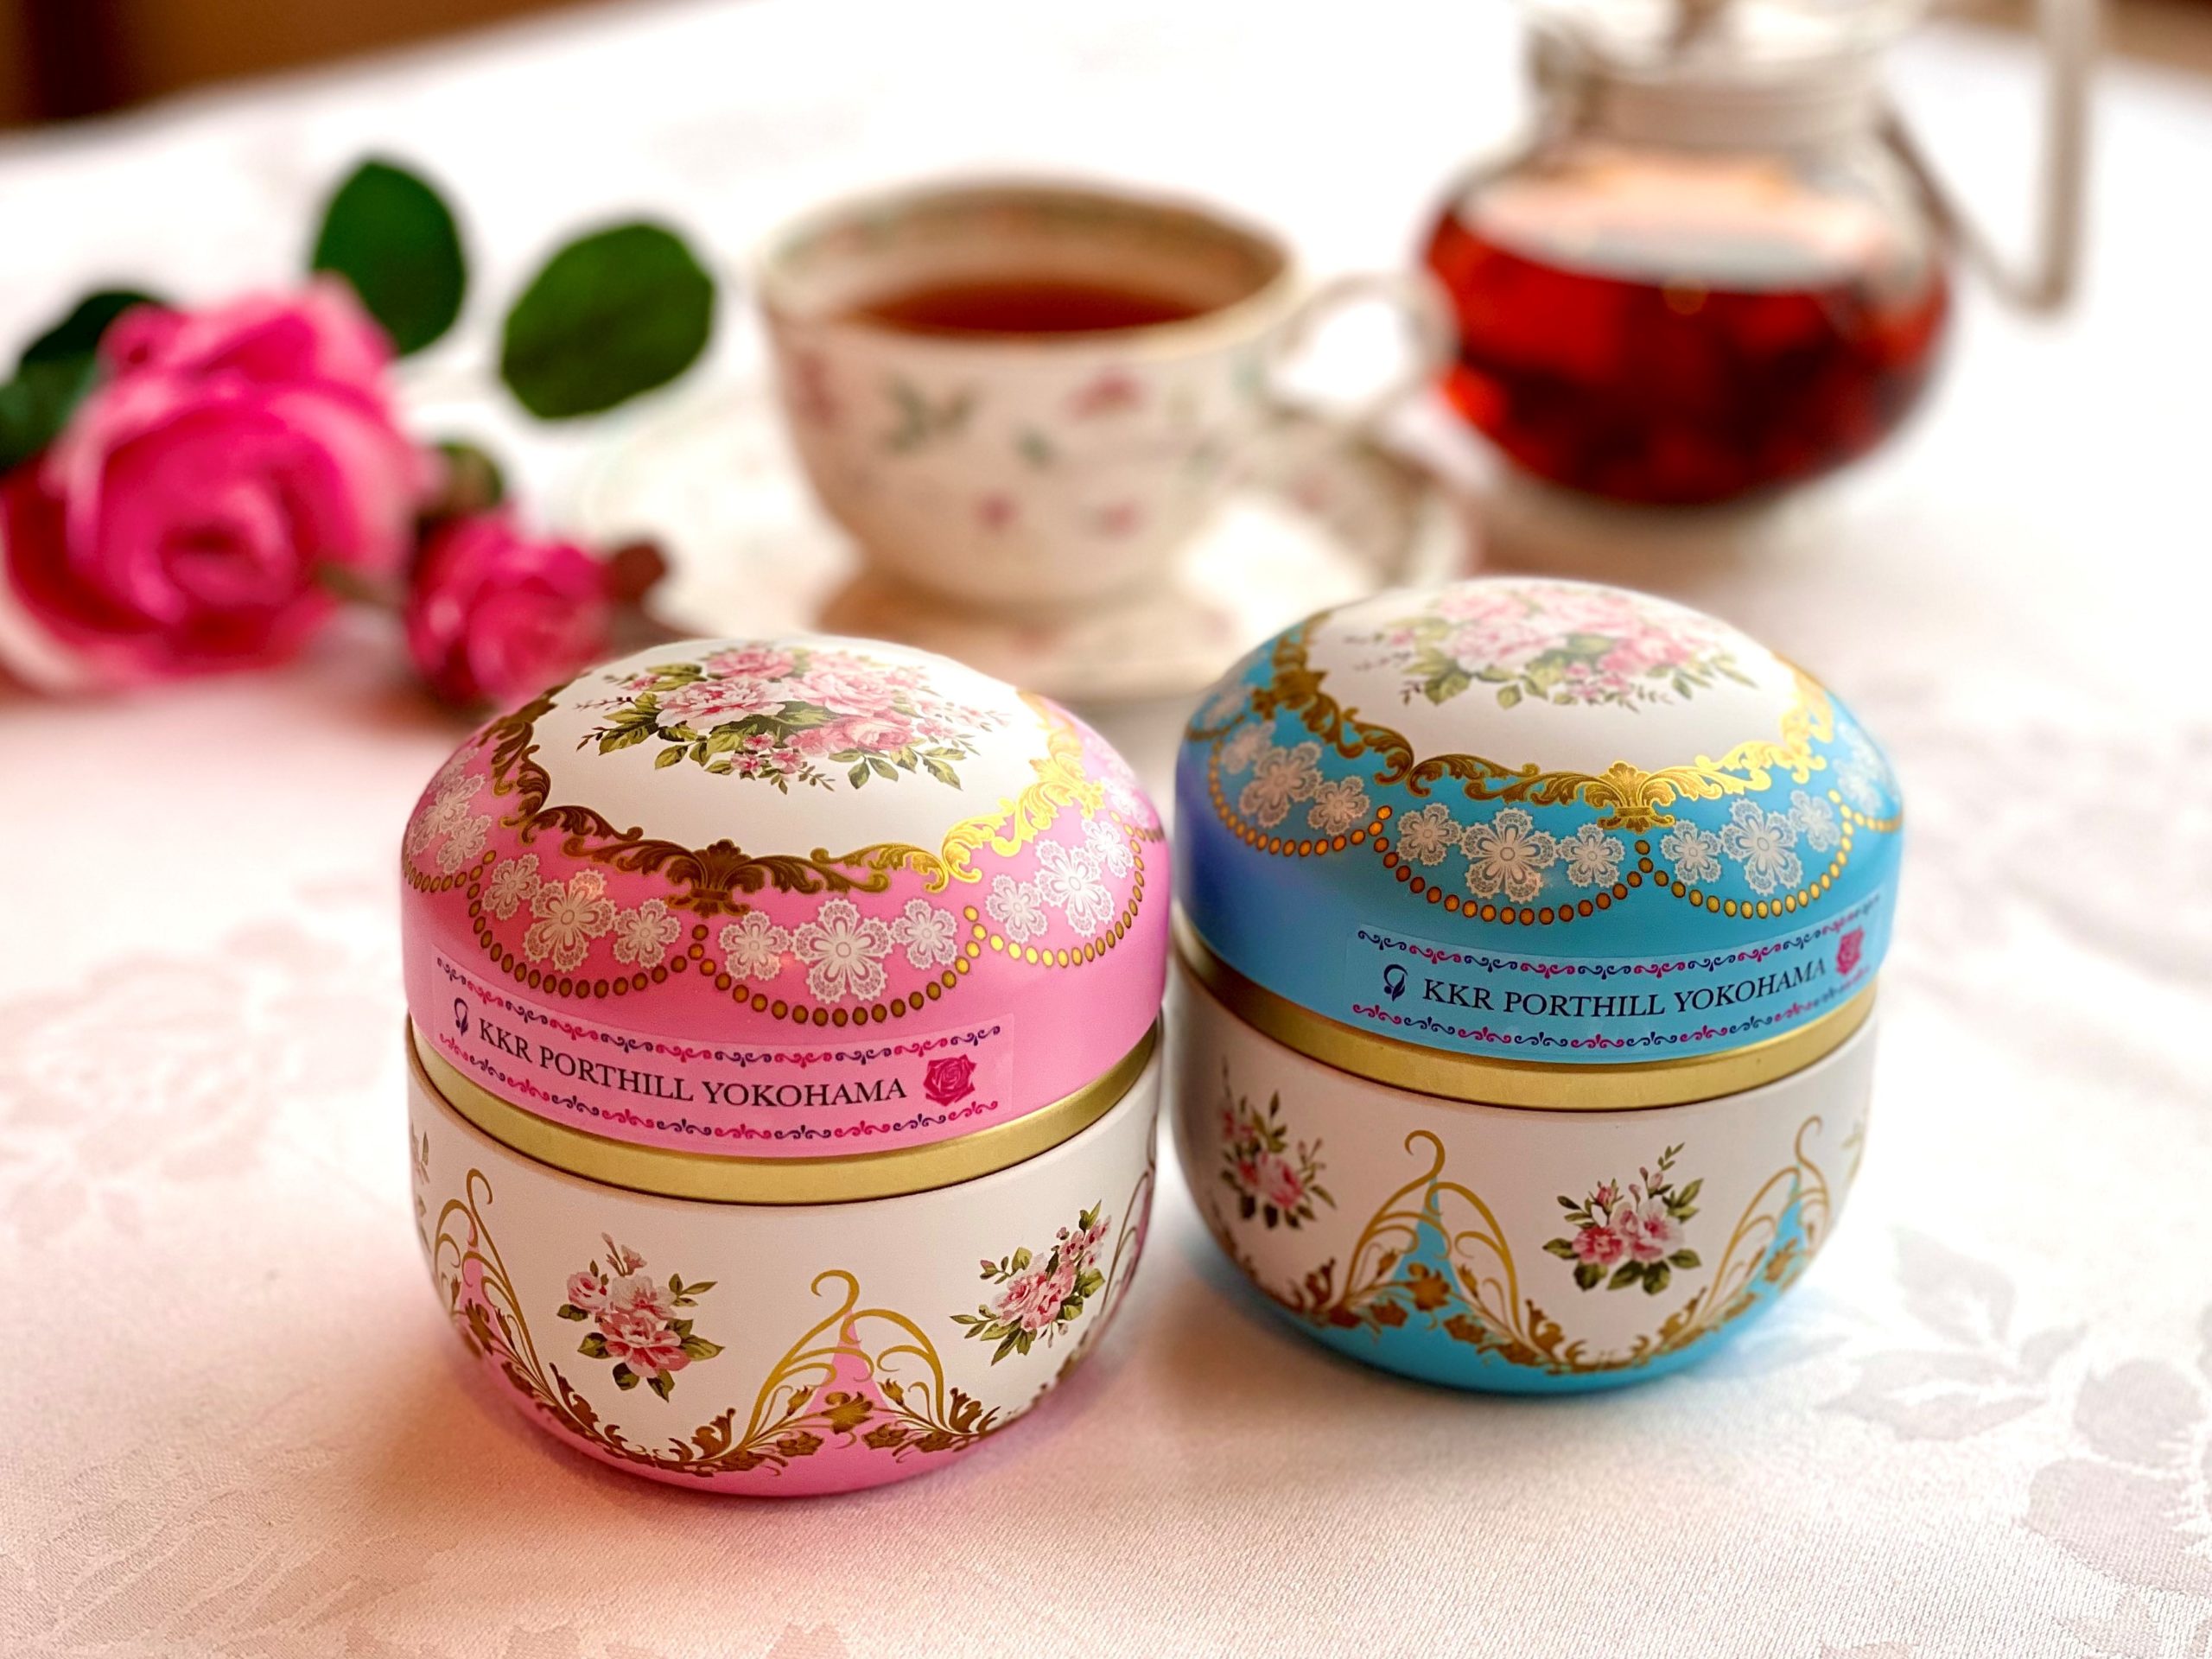 ほのかに香る薔薇の紅茶<br>「ローズティー」<br>香り高く優雅な味わい<br>「セーデルティー」